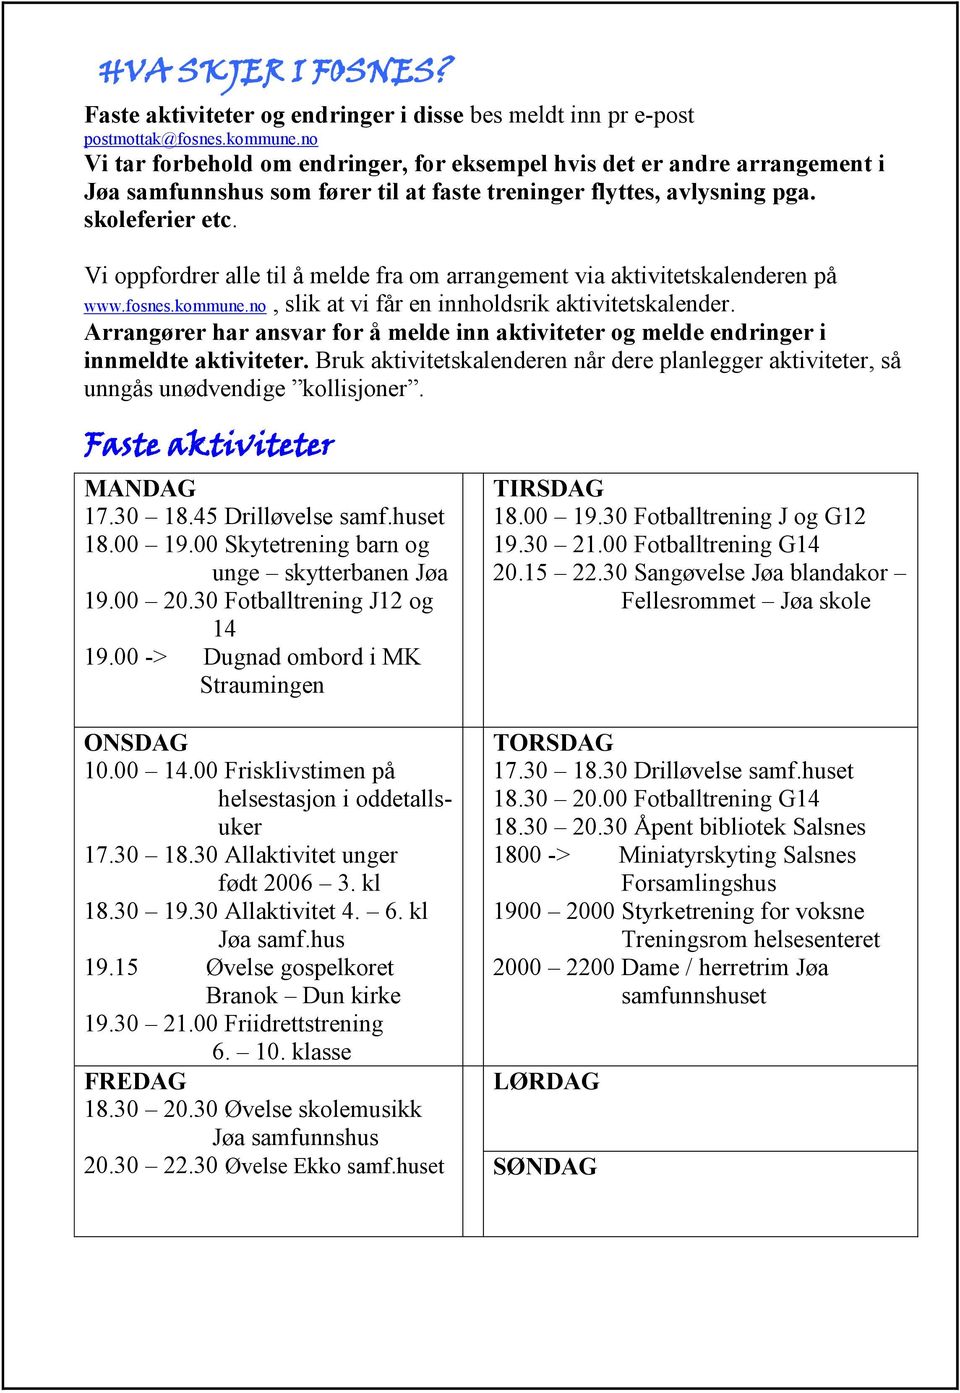 Vi oppfordrer alle til å melde fra om arrangement via aktivitetskalenderen på www.fosnes.kommune.no, slik at vi får en innholdsrik aktivitetskalender.